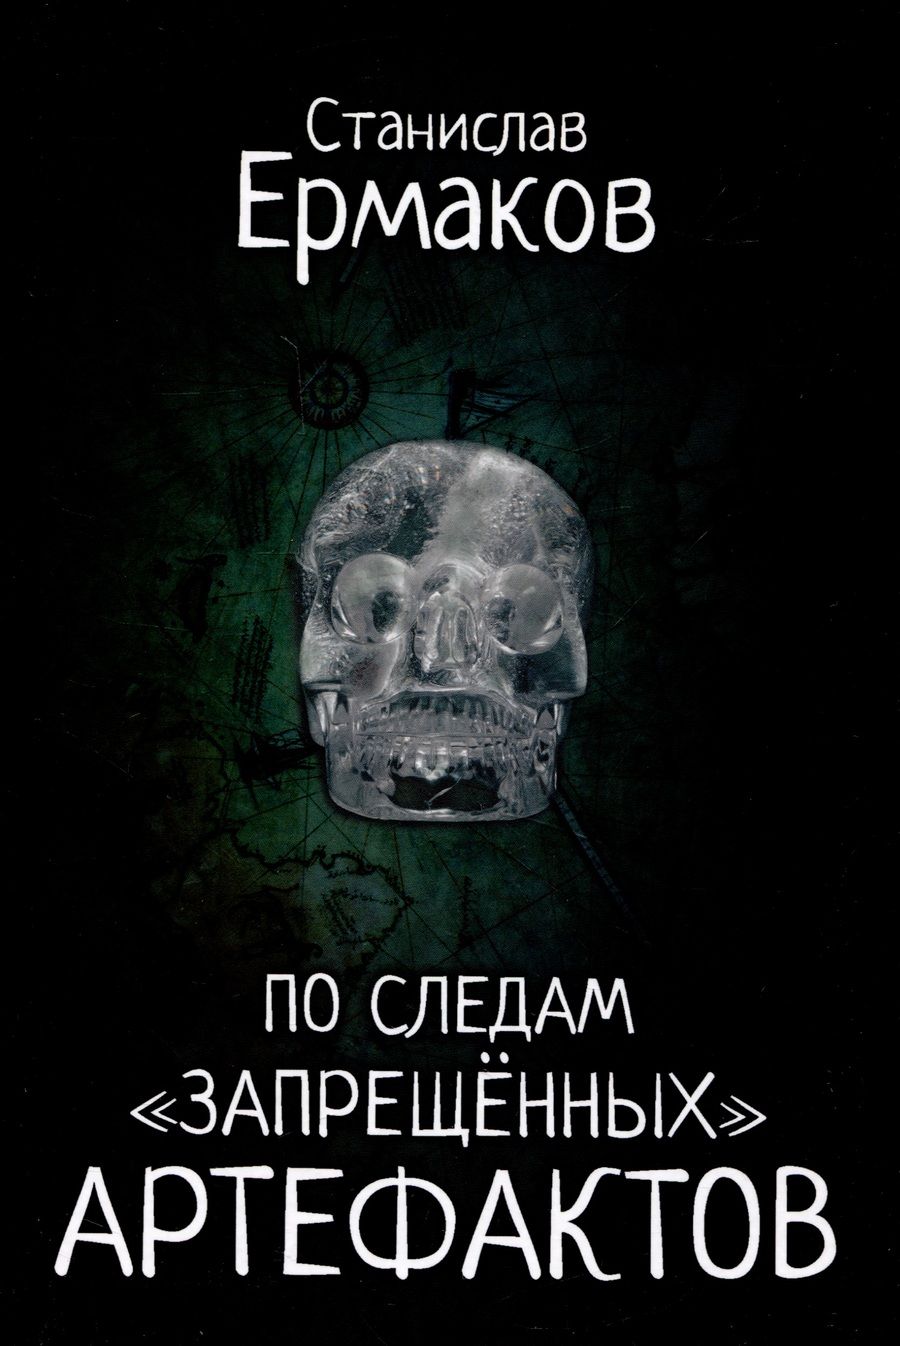 Обложка книги "Ермаков: По следам "запрещённых" артефактов"